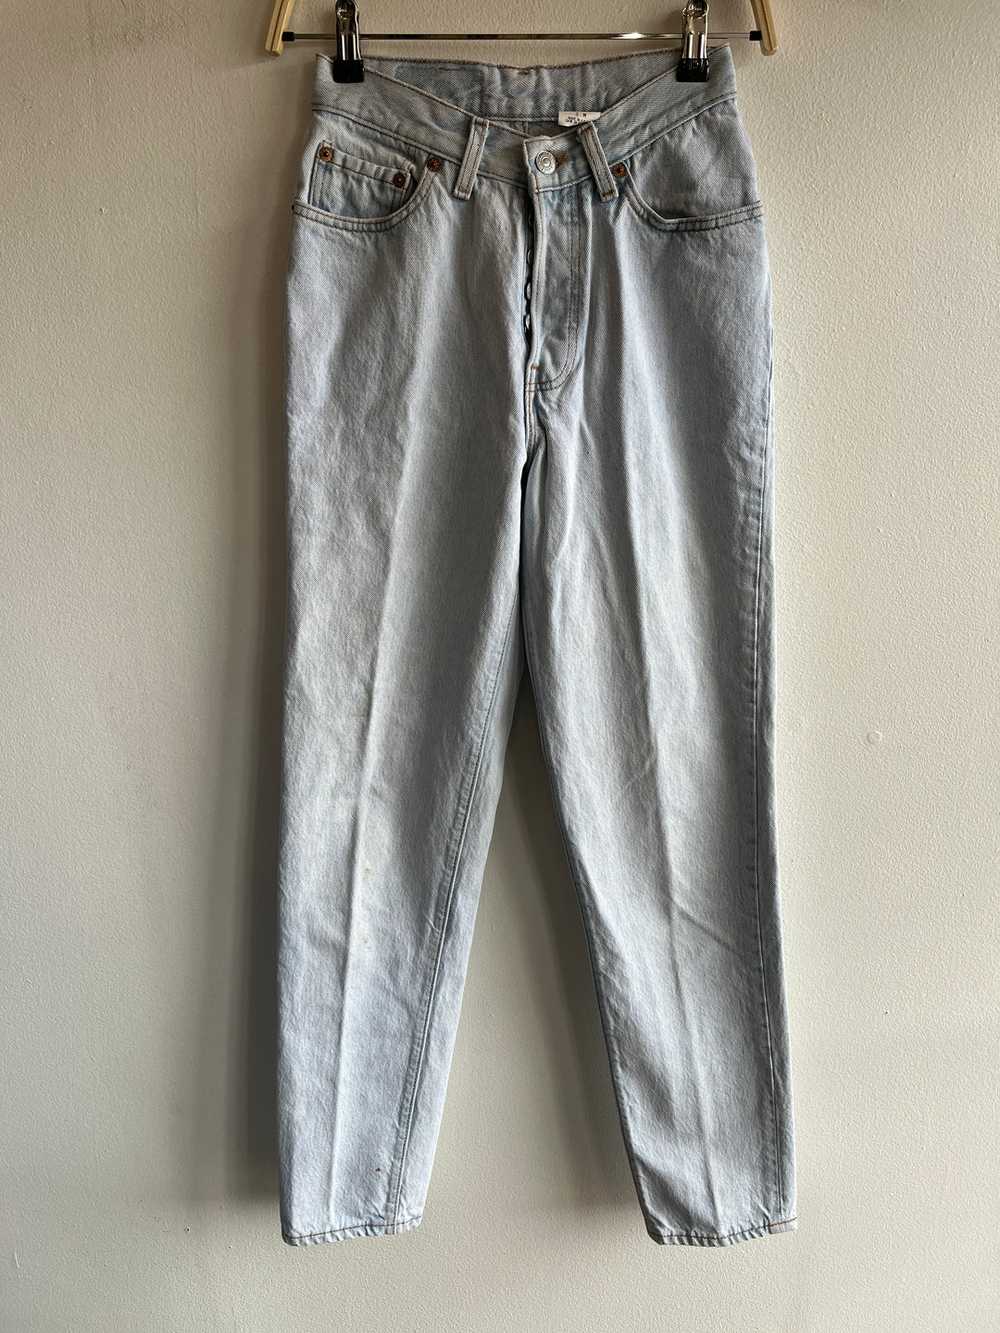 Vintage 1990’s Levi’s 501 Denim Jeans - image 1